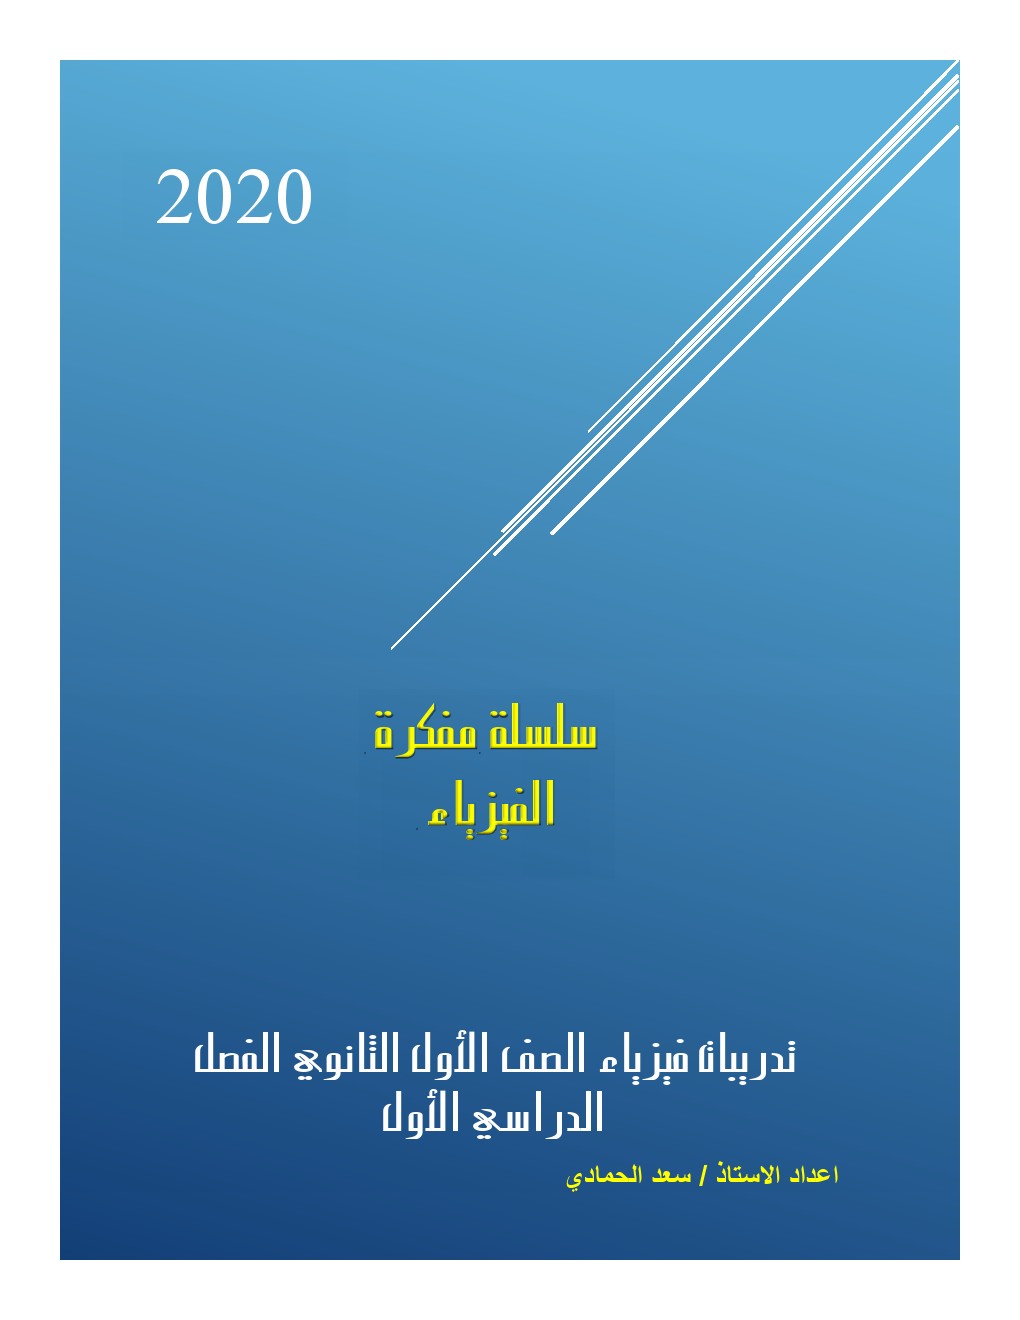 أسئلة النظام الجديد في الفيزياء أول ثانوي الترم الاول 2021 أ/ سعد الحمادي	 | موقع س و ج  | الفيزياء الصف الاول الثانوى الترم الاول | طالب اون لاين